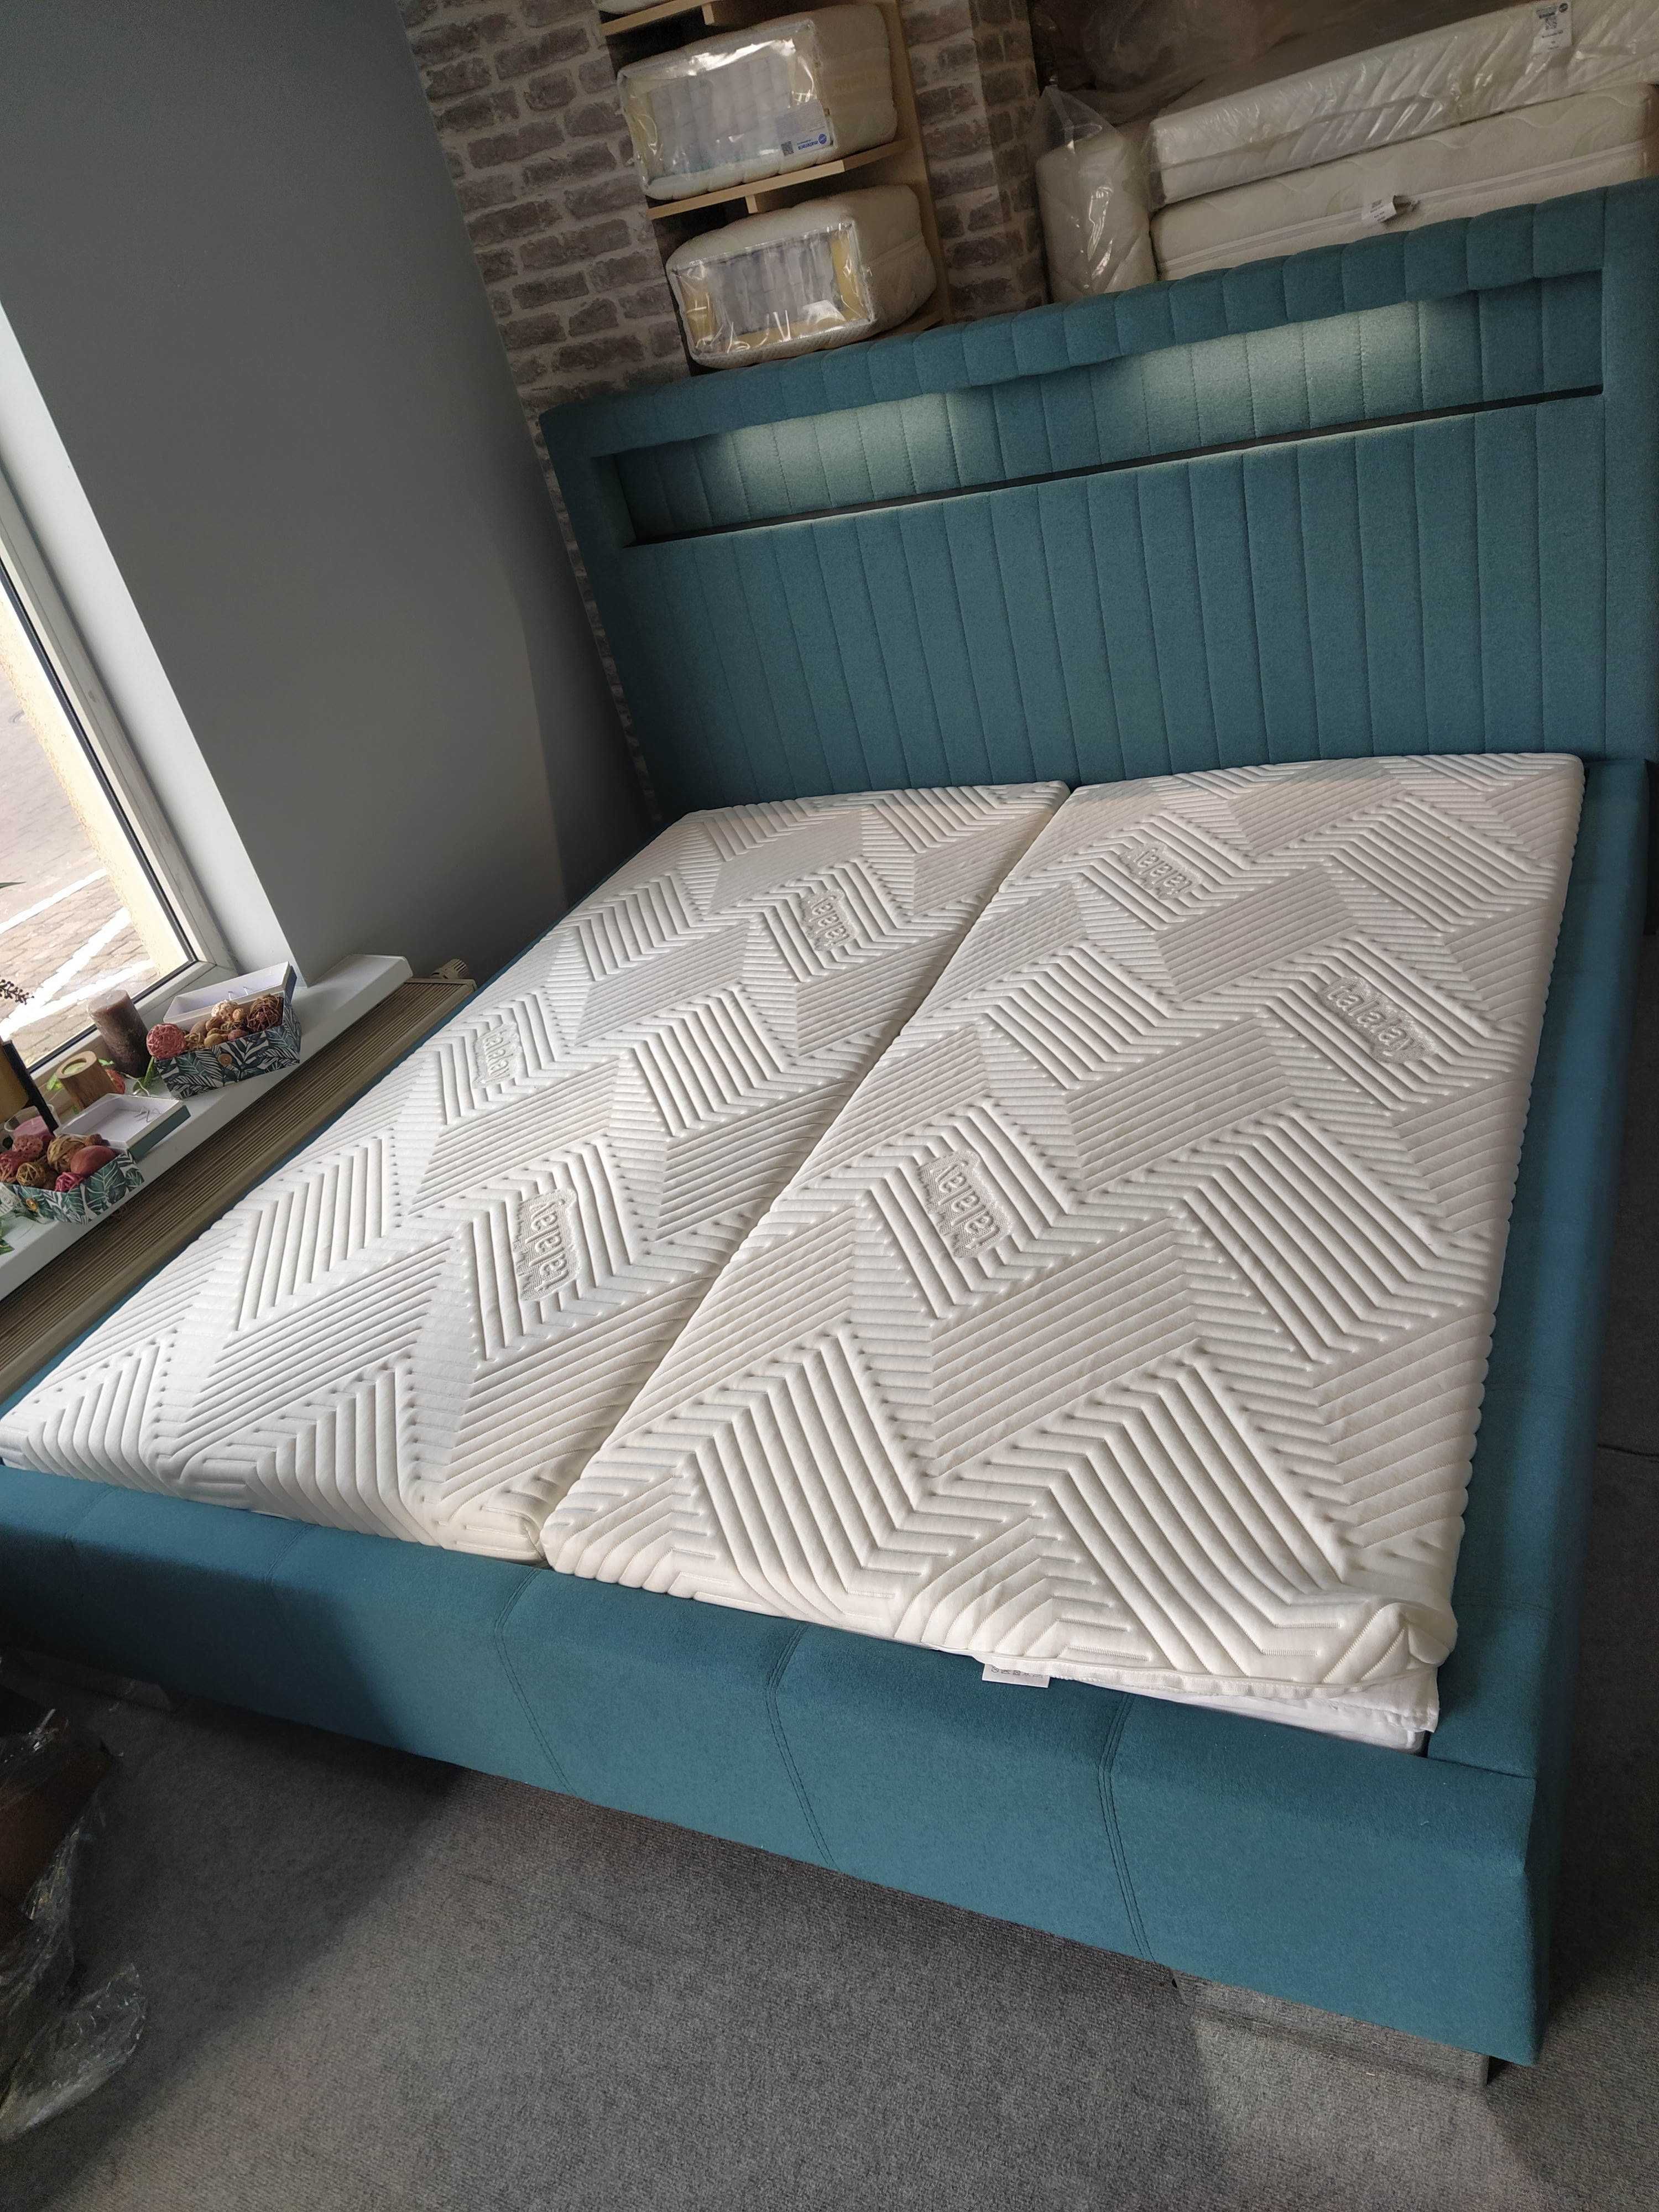 Łóżko tapicerowane 180x200 turkus podświetlane nowe od ręki dowóz